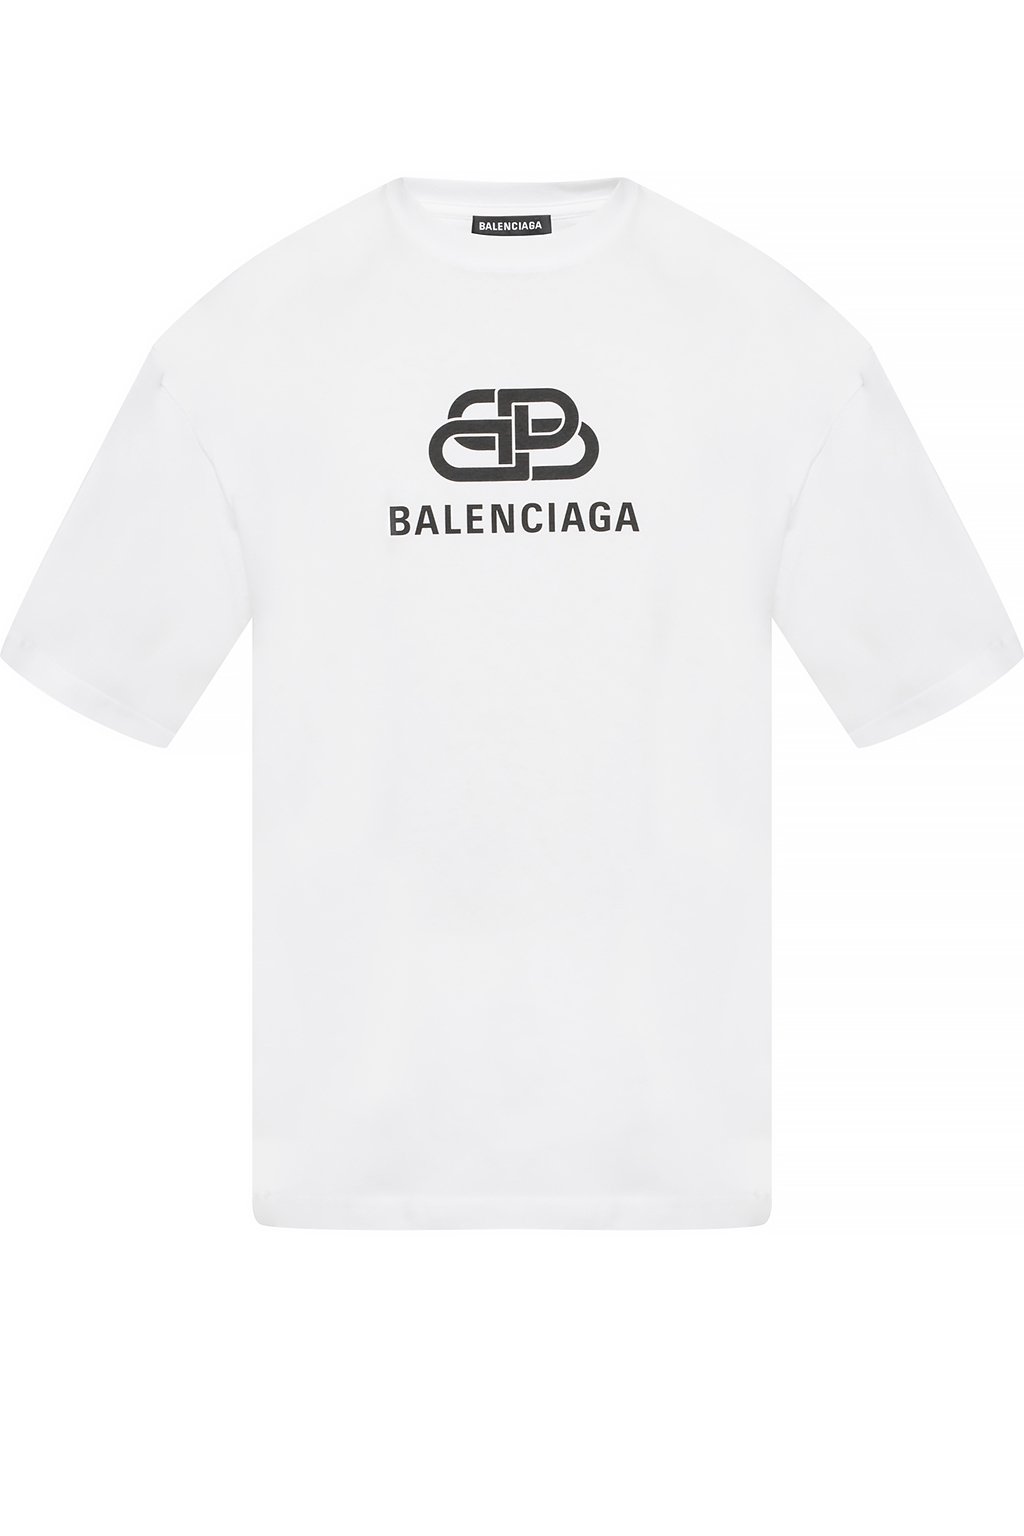 BALENCIAGA  Sponsor Logo Tshirt  IperShopNY